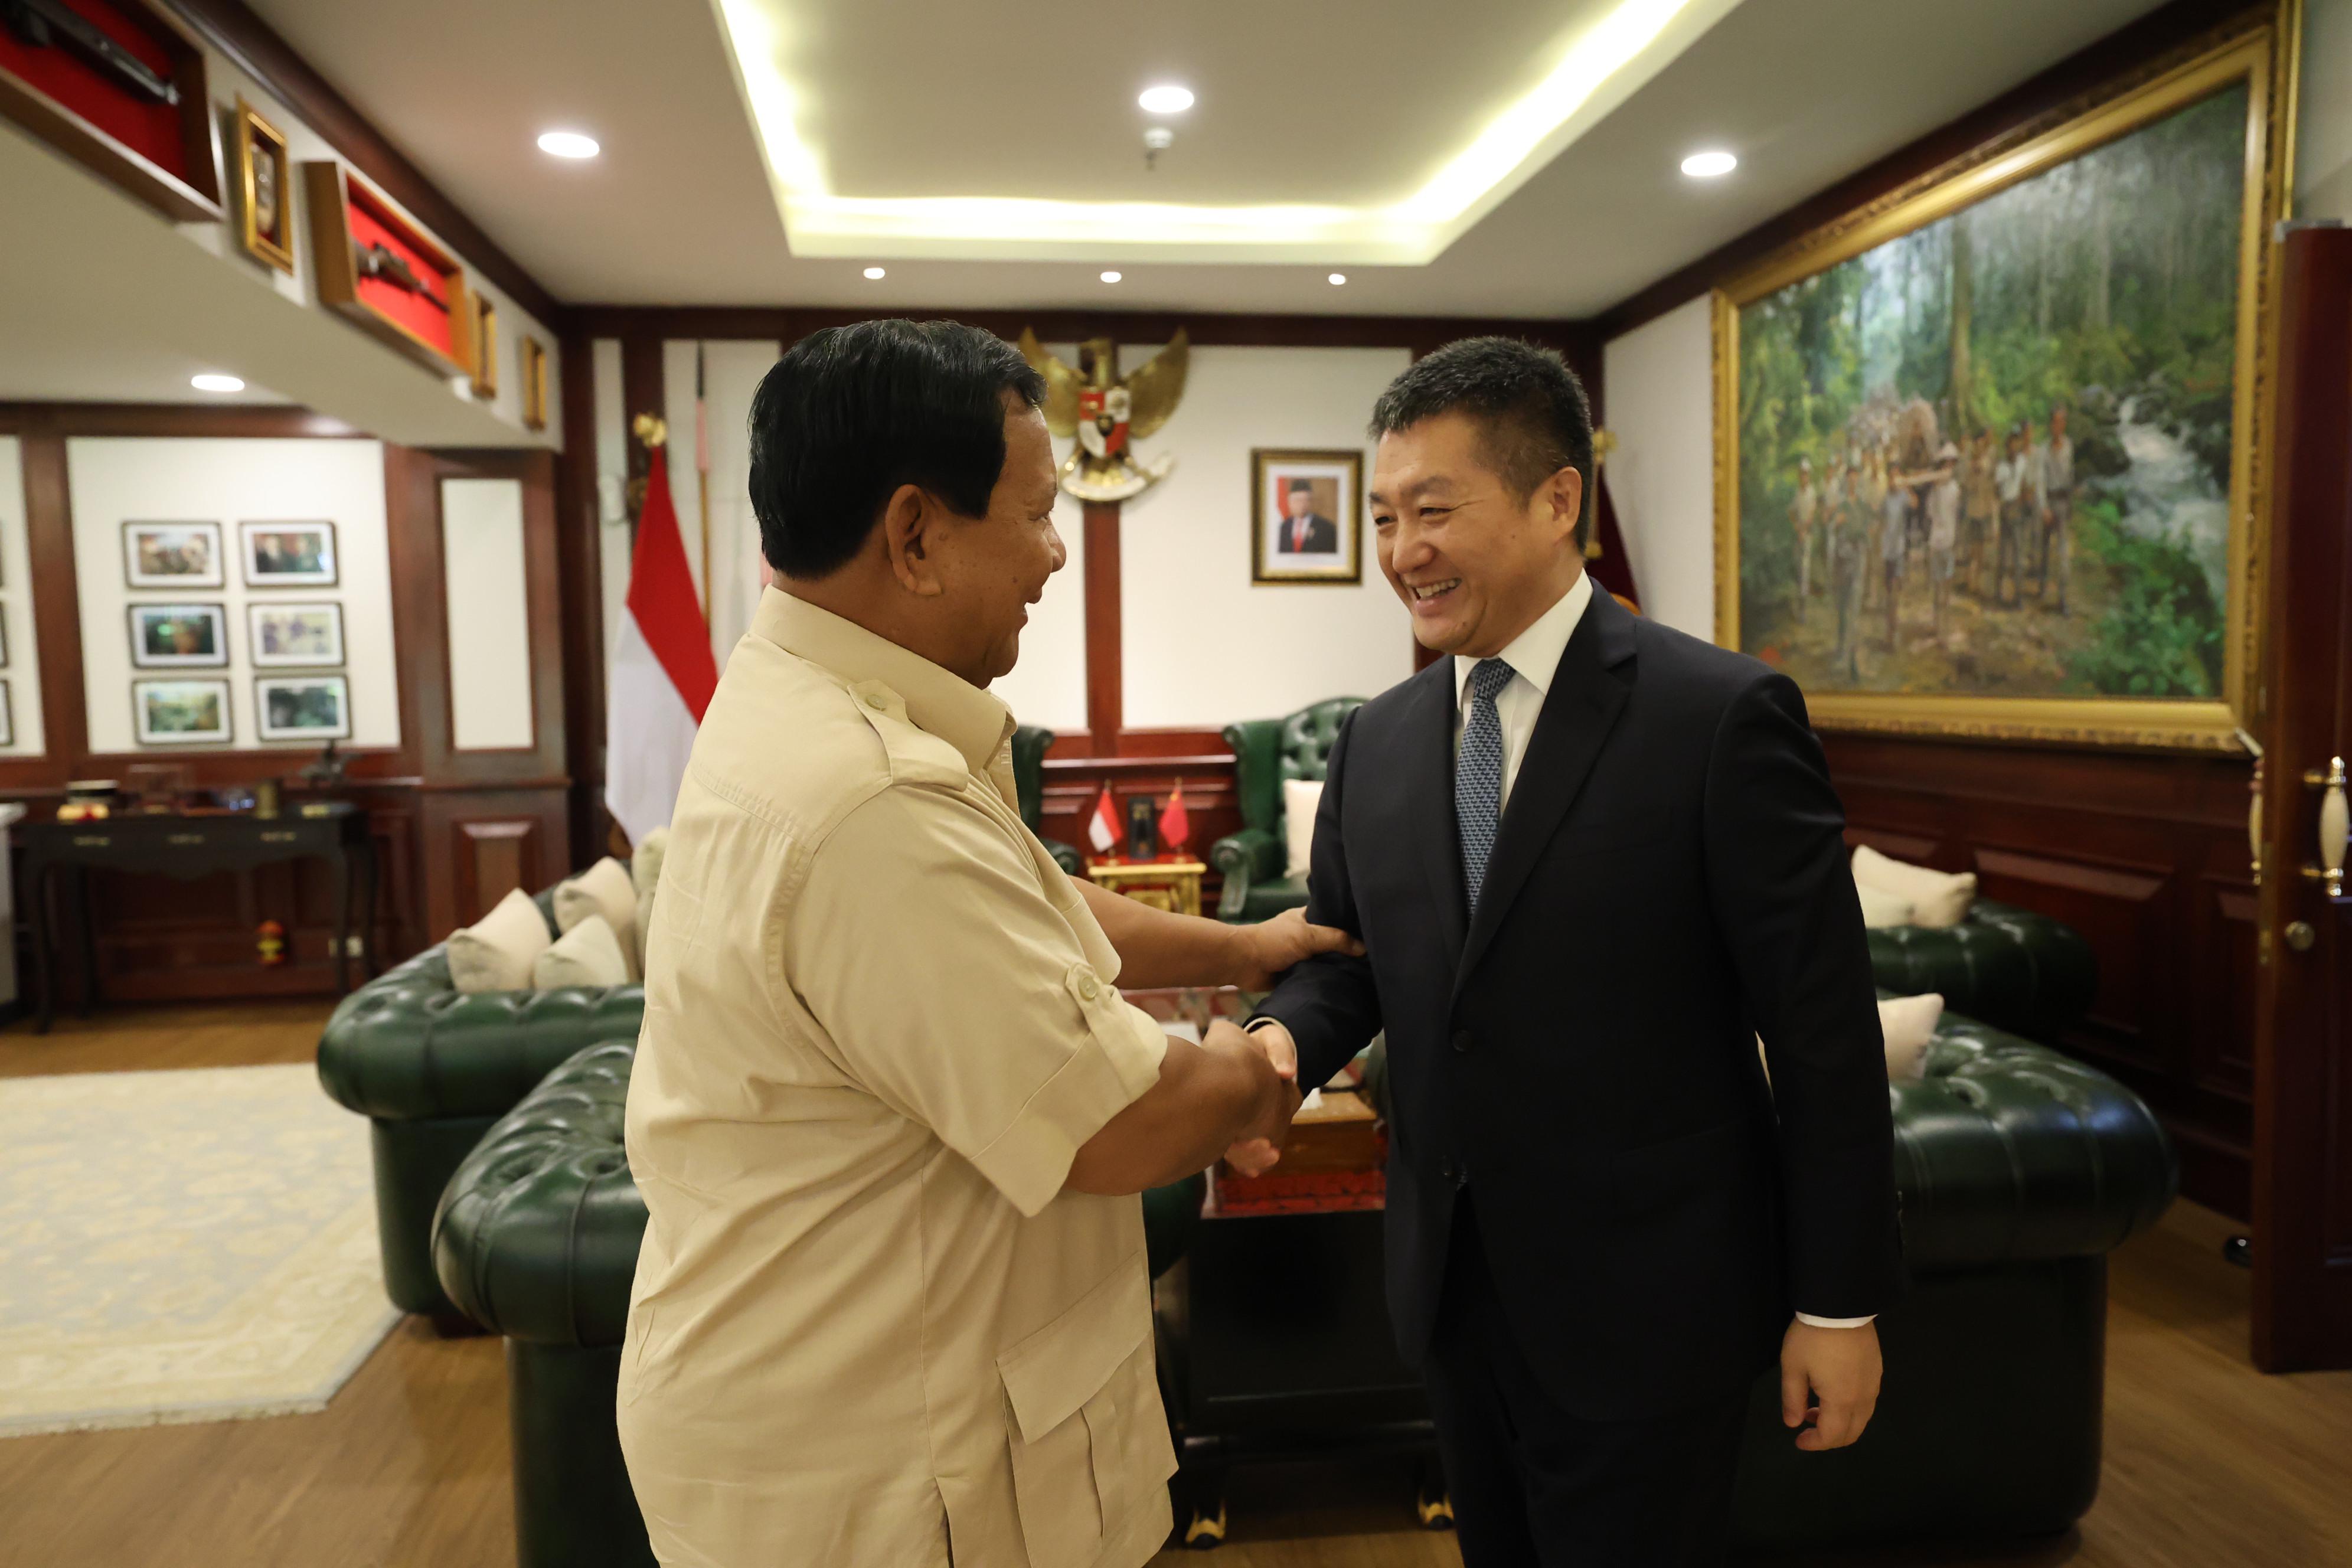 Xi Jinping Beri Selamat ke Prabowo sebagai Presiden Terpilih